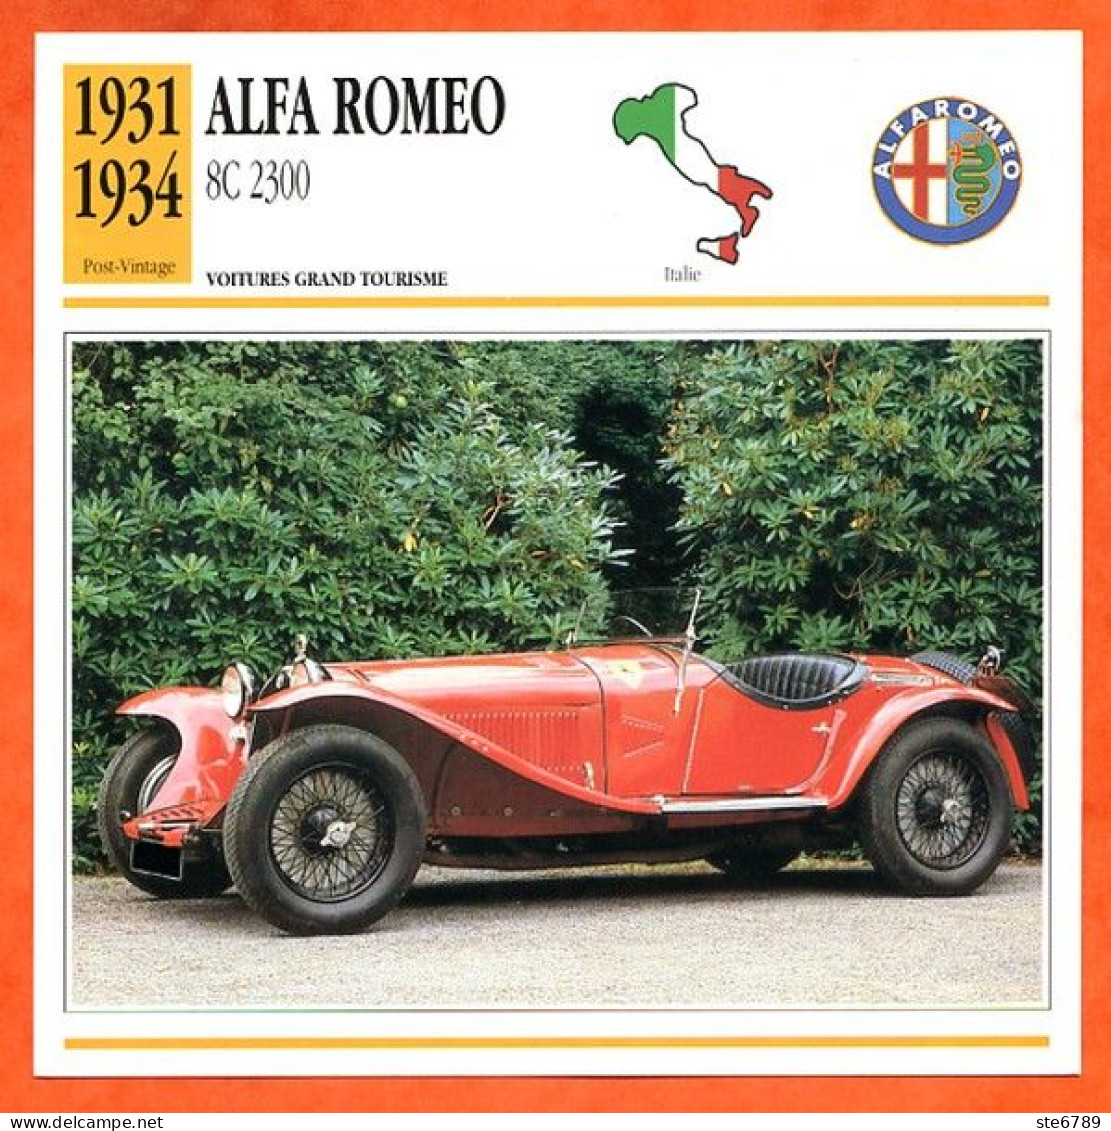 ALFA ROMEO 8C 2300 1931 Voiture Grand Tourisme Italie Fiche Technique Automobile - Auto's